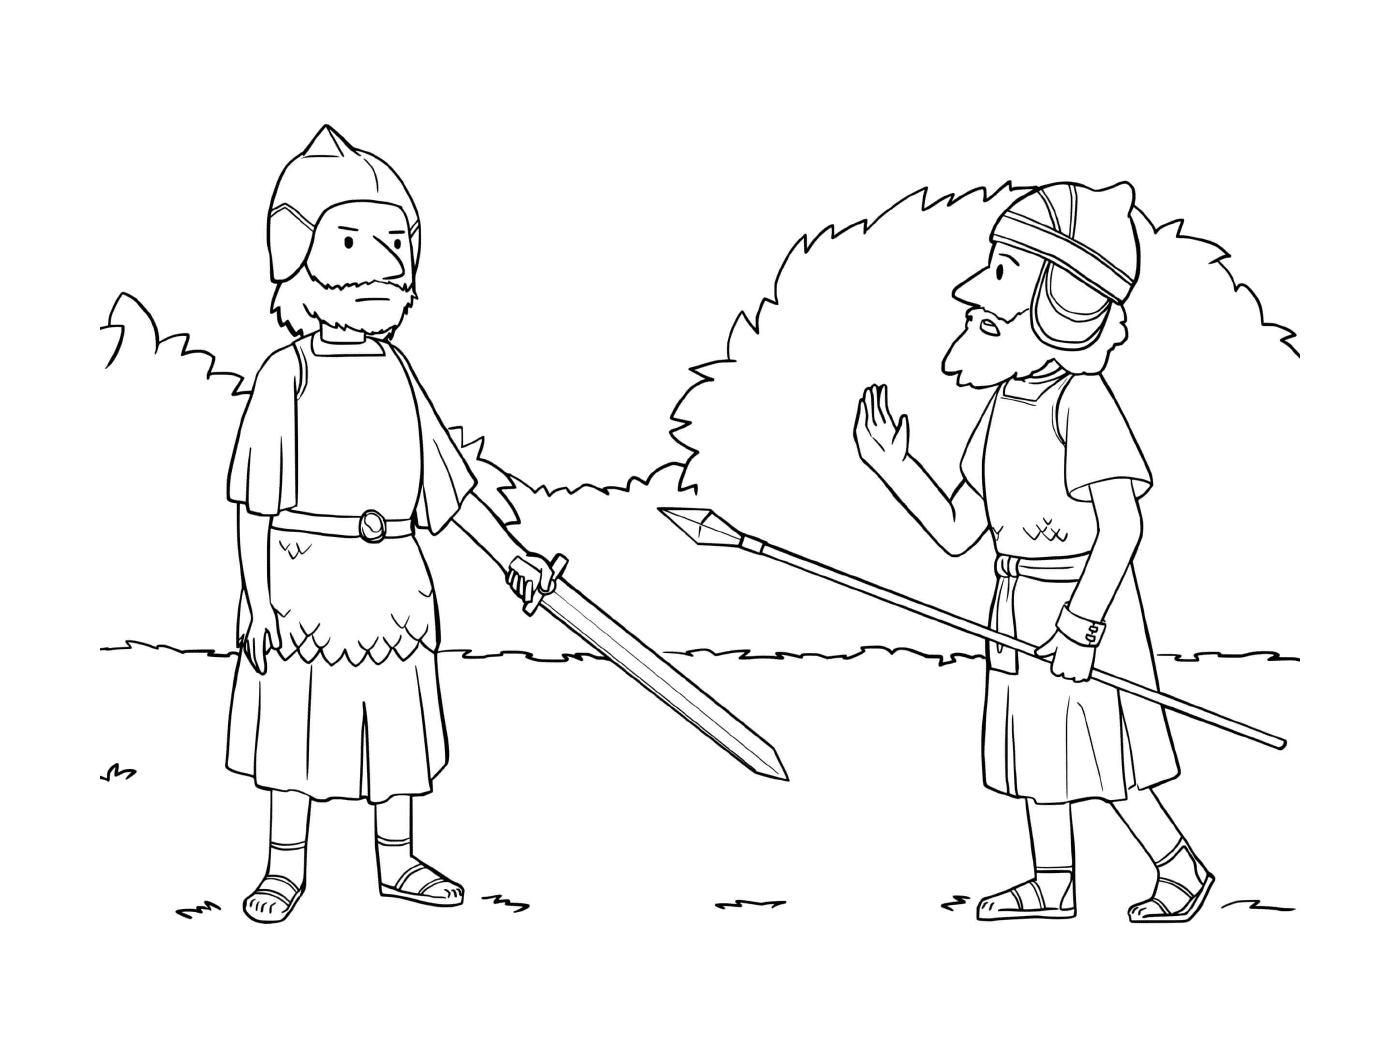  Zwei Männer im mittelalterlichen Kostüm 